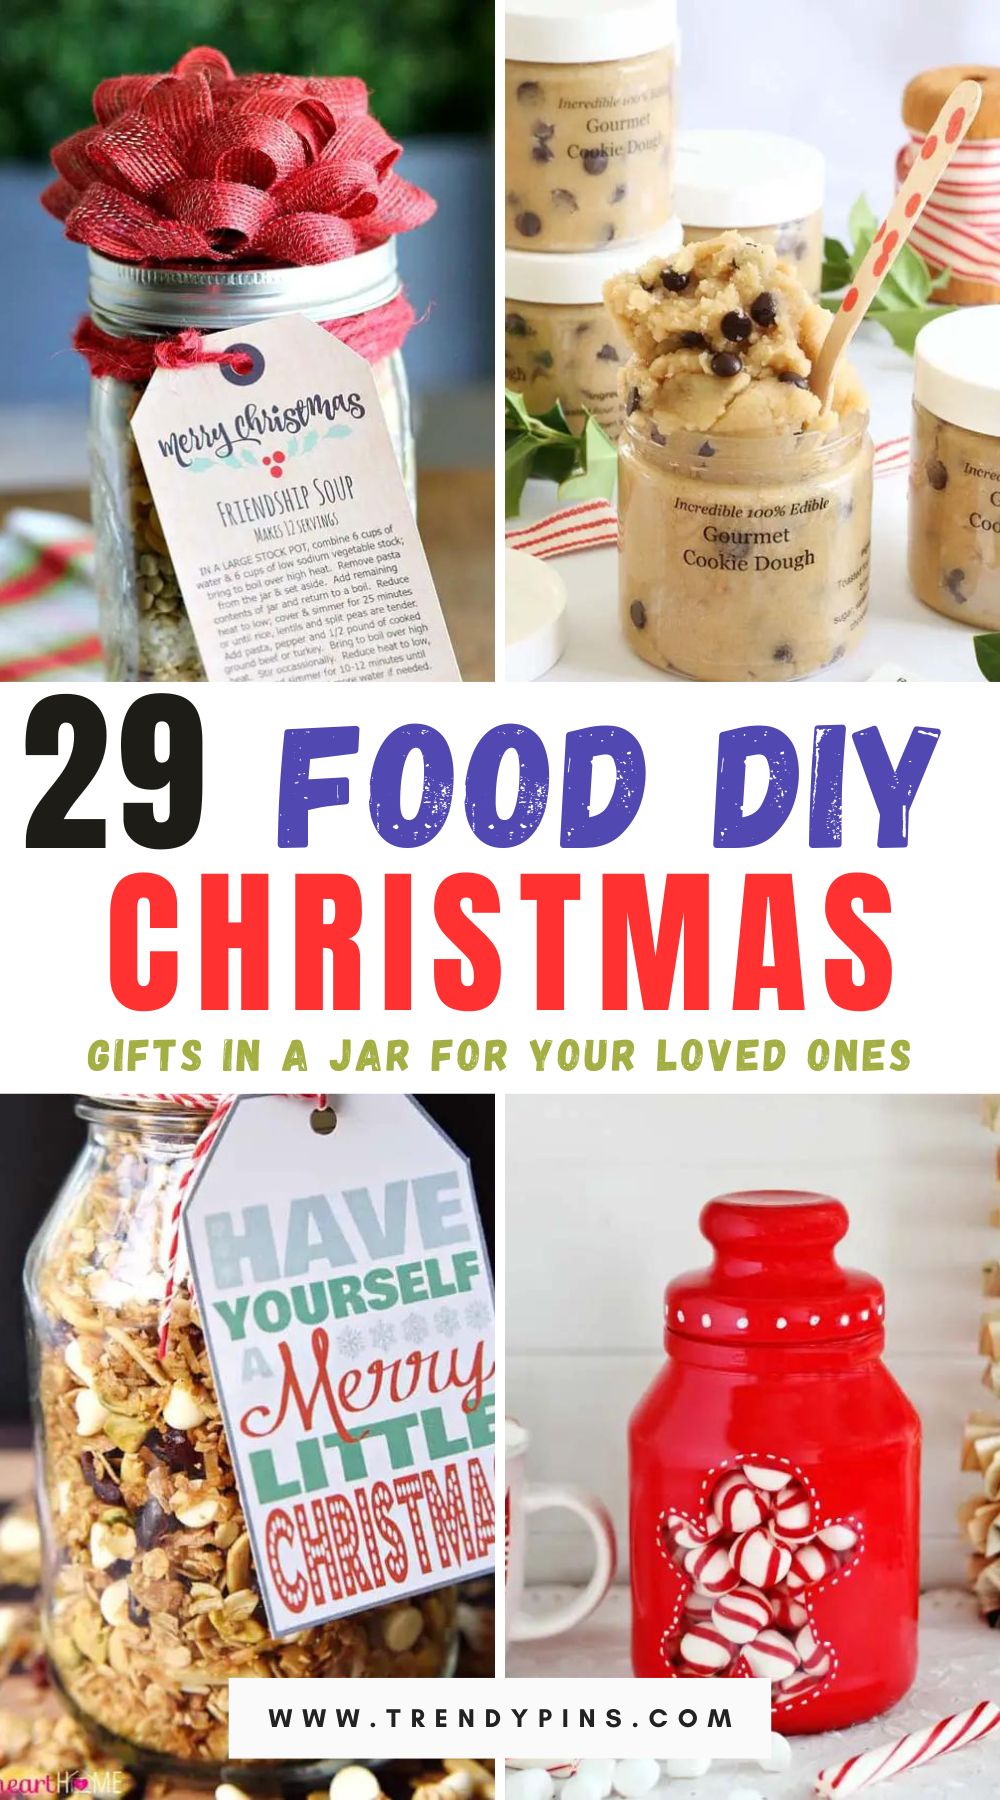 Food DIY Christmas Gifts in a Jar